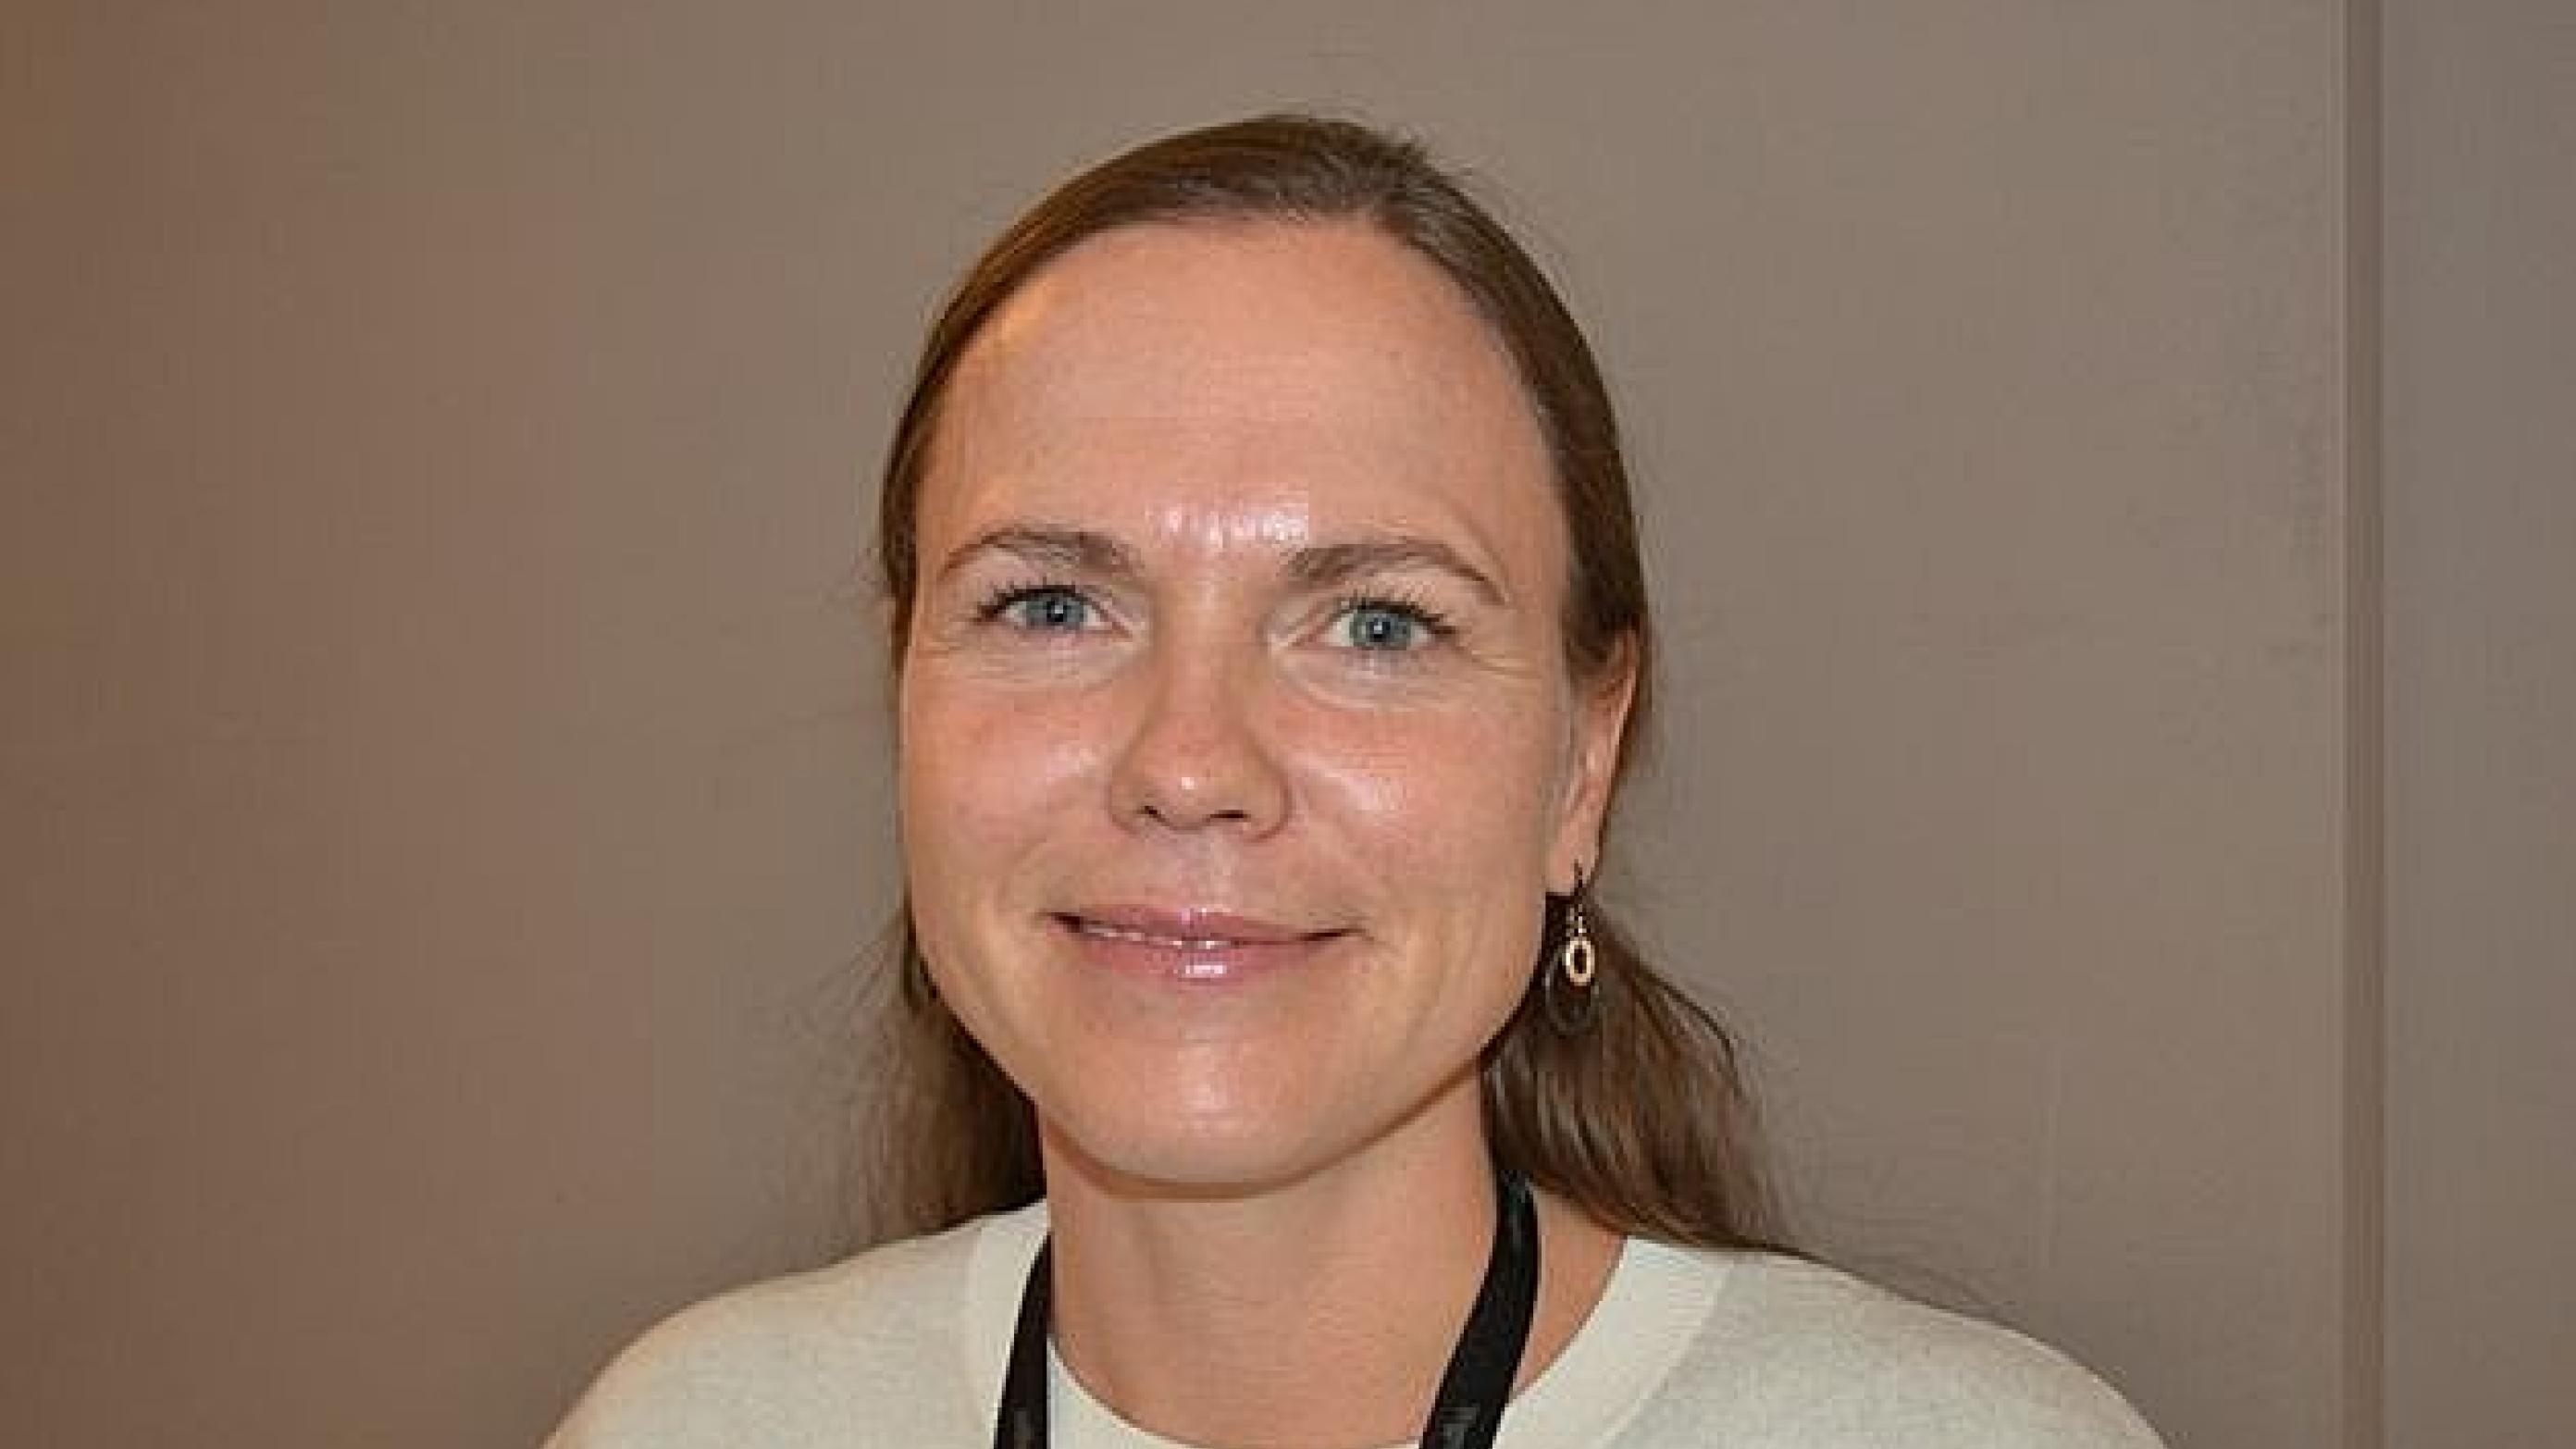 Sofie Hjortø har travlt og engagerer sig i mange ting. Både i sit arbejde og fagpolitisk, hvor hun er aktiv i Yngre Læger. Foto: Ugeskrift for Læger